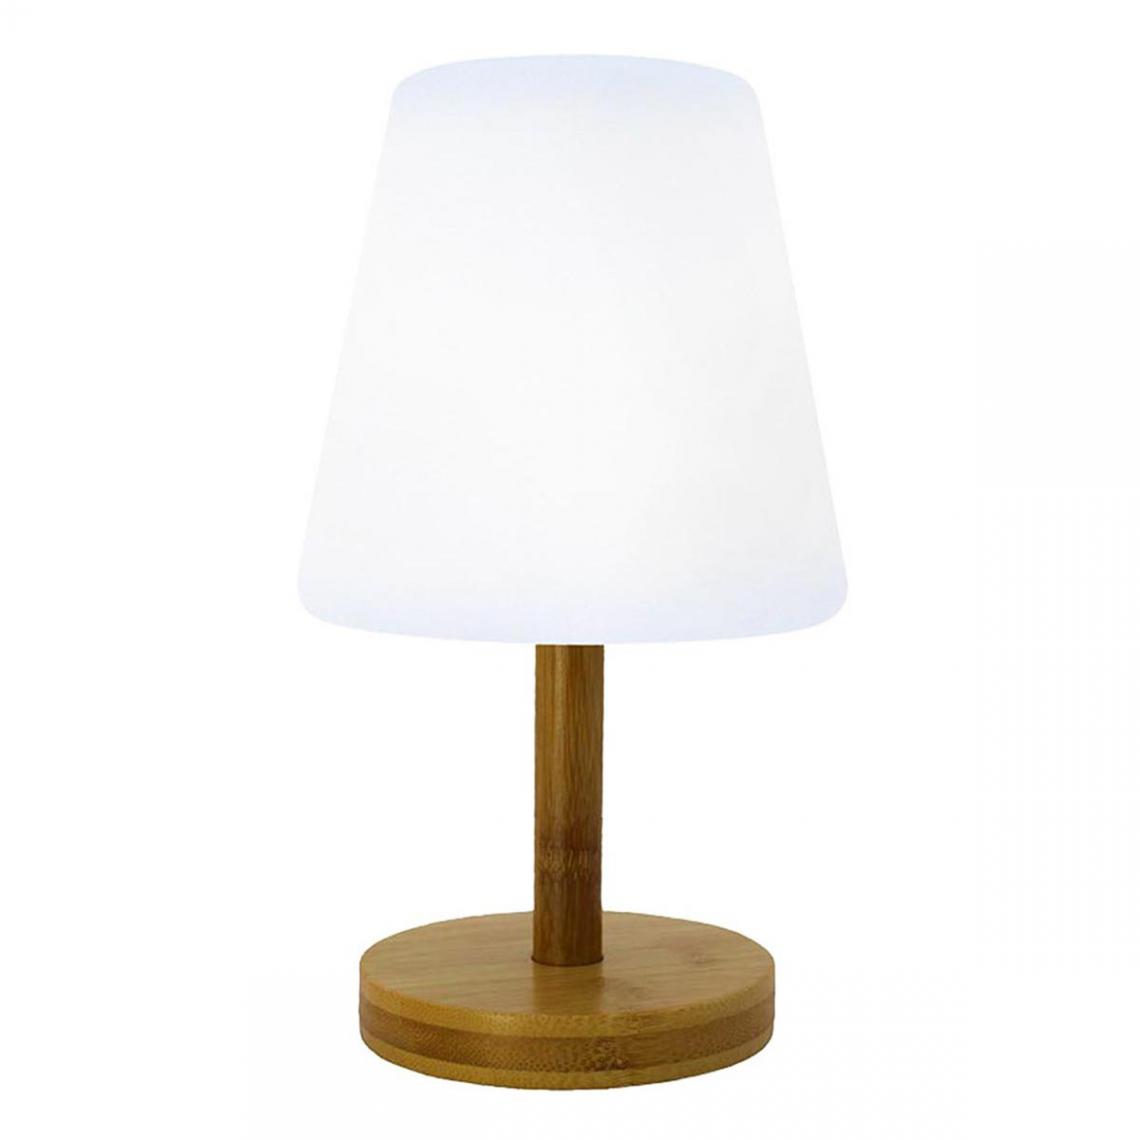 Lumisky - Lampe de table sans fil STANDY MINI WOOD blanc en bois H25cm - Lampes à poser